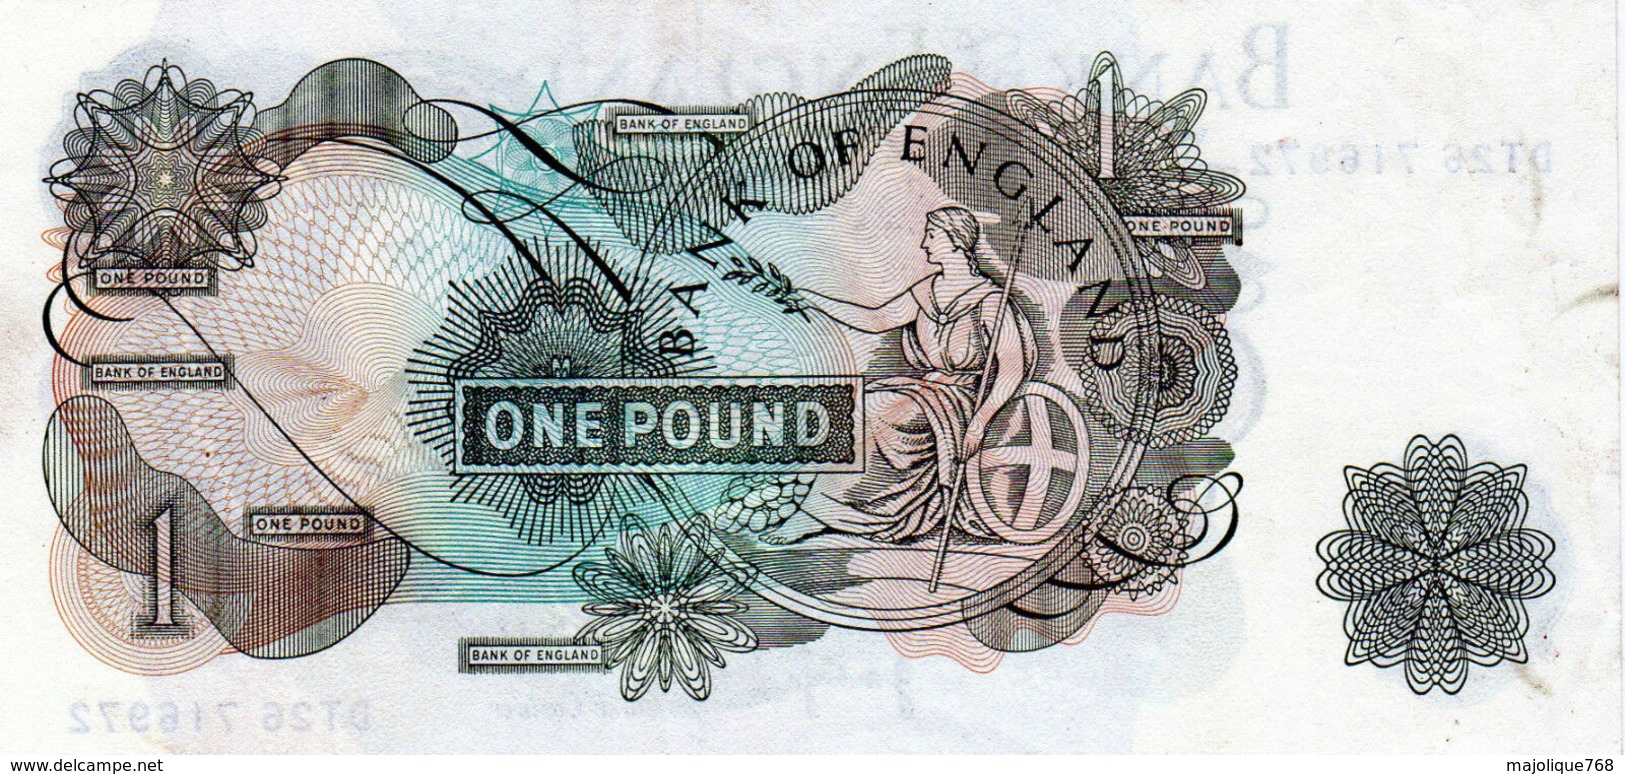 Billet De Grande-Bretagne De 1 Pound N D (1960-77) En T T B +-D T 26 716972 - 1 Pound